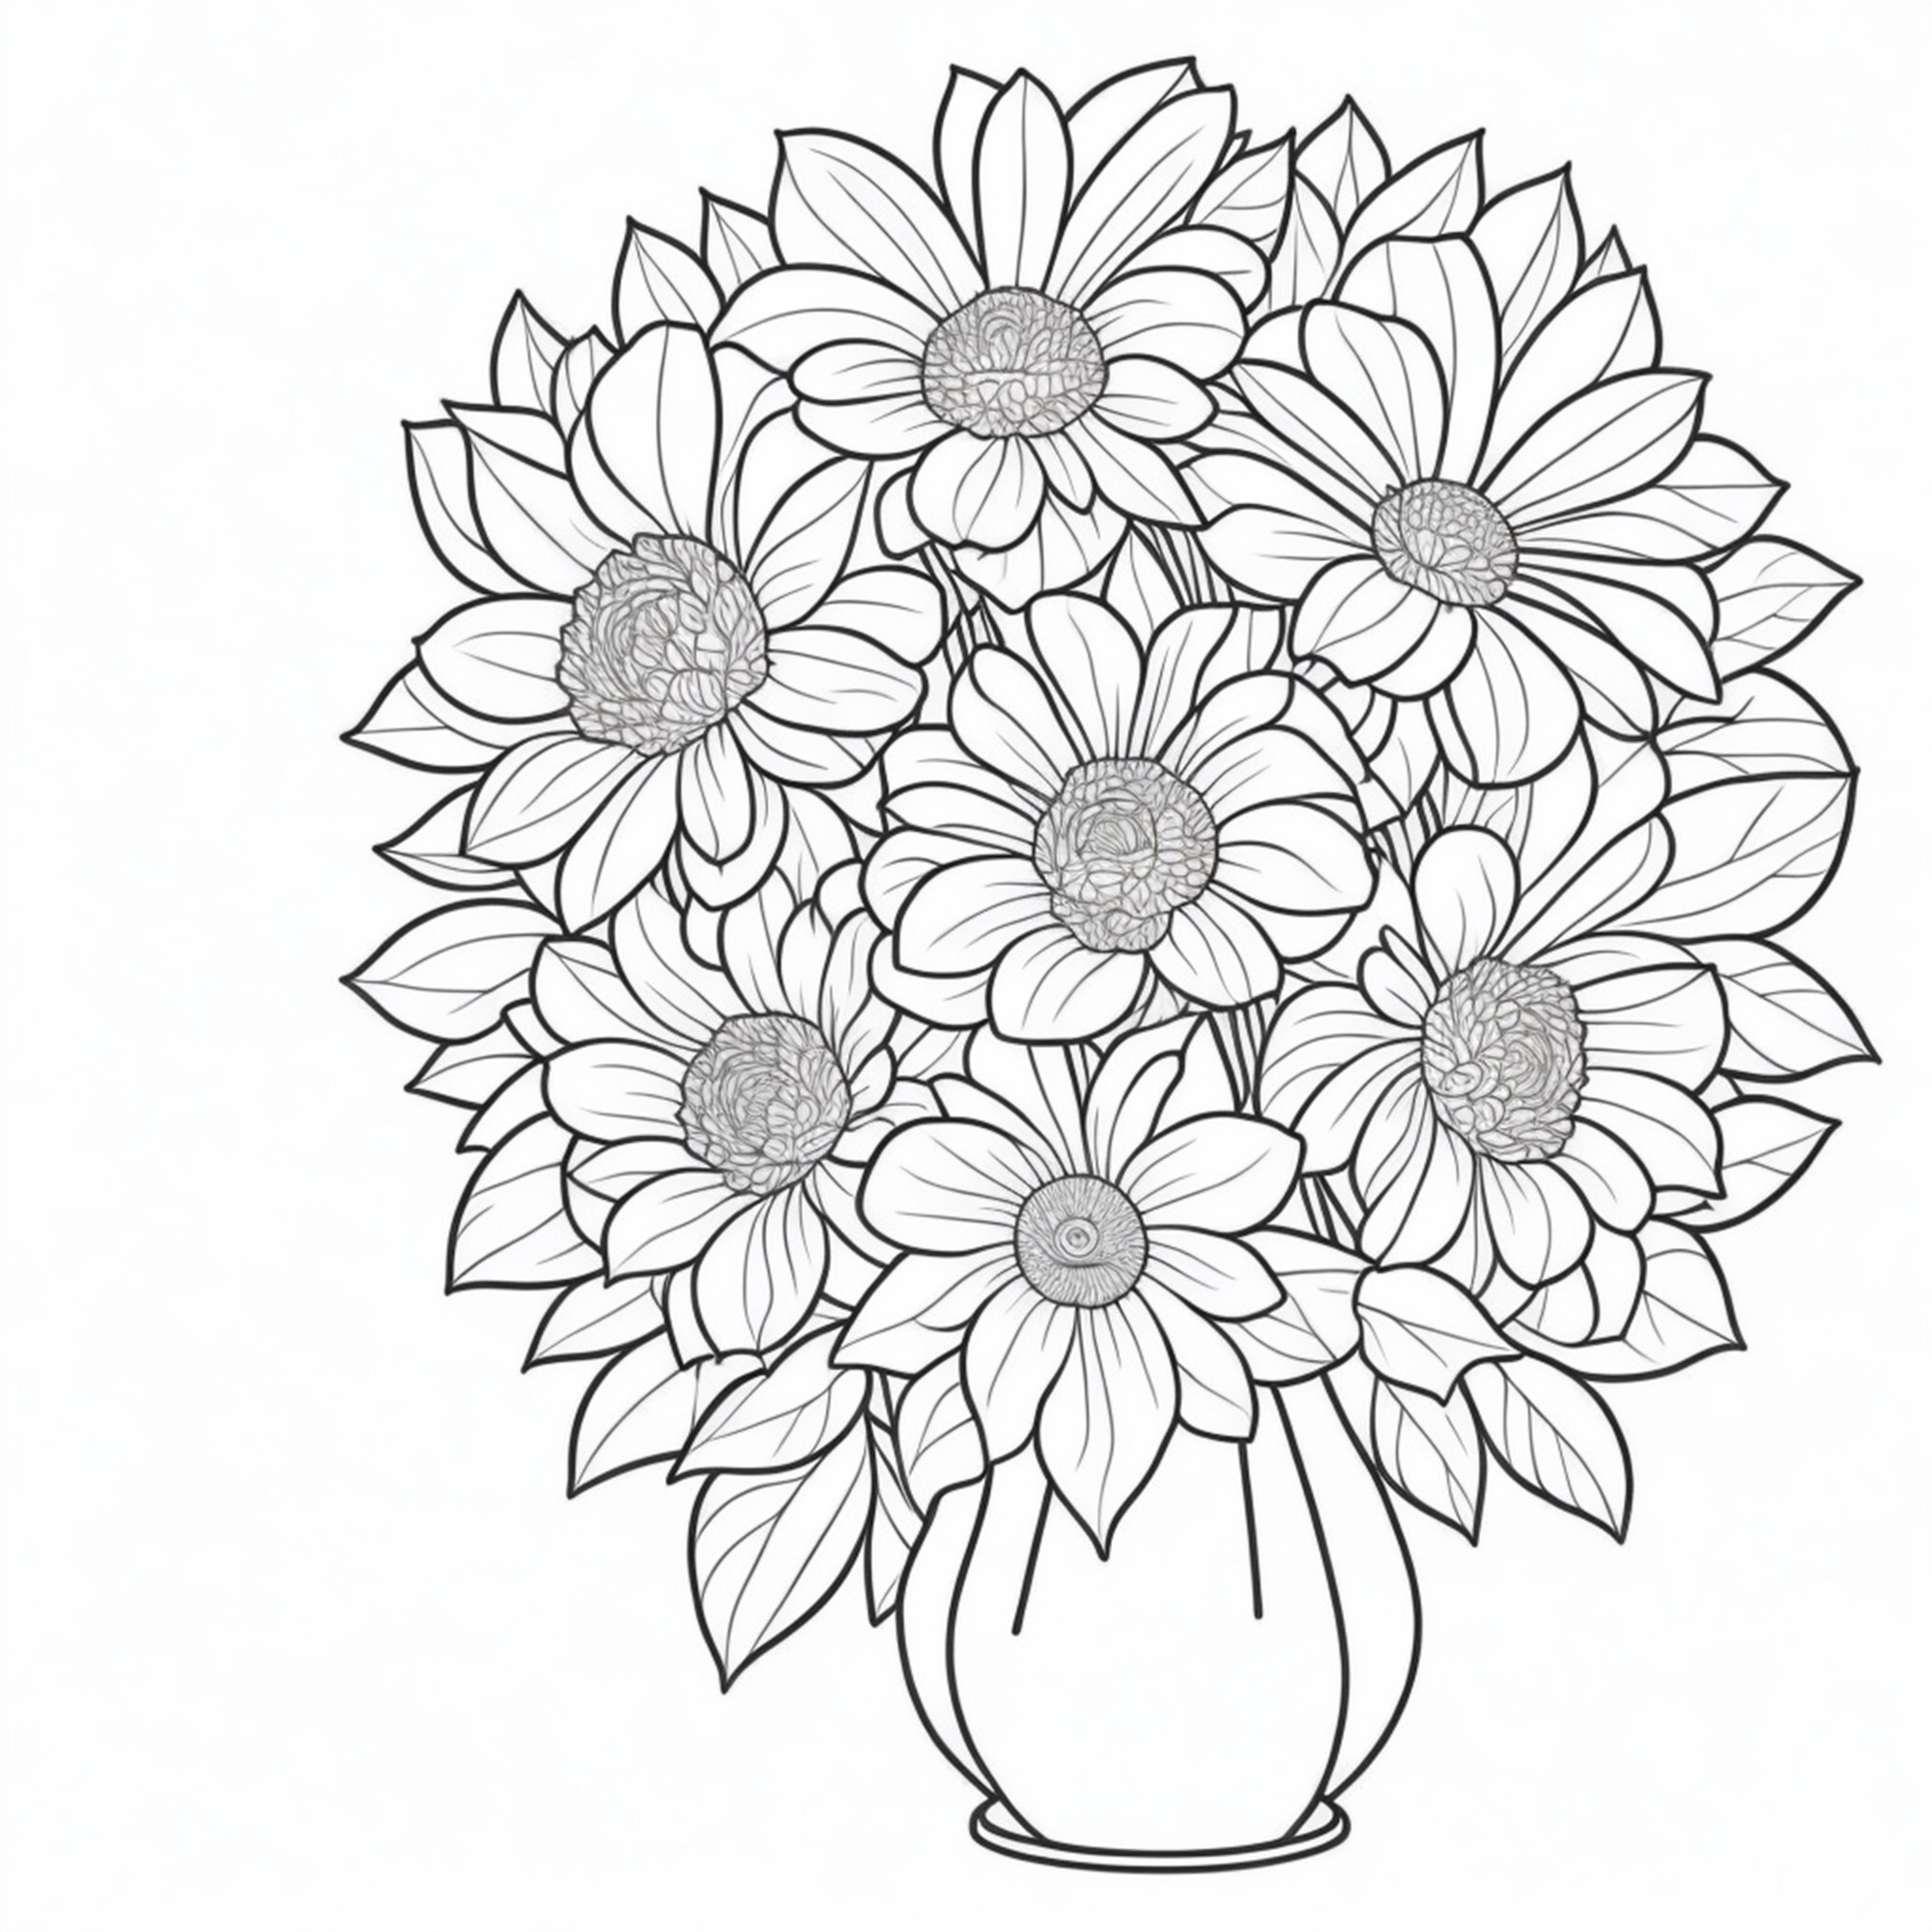 Раскраска для детей: много красивых цветов в вазе